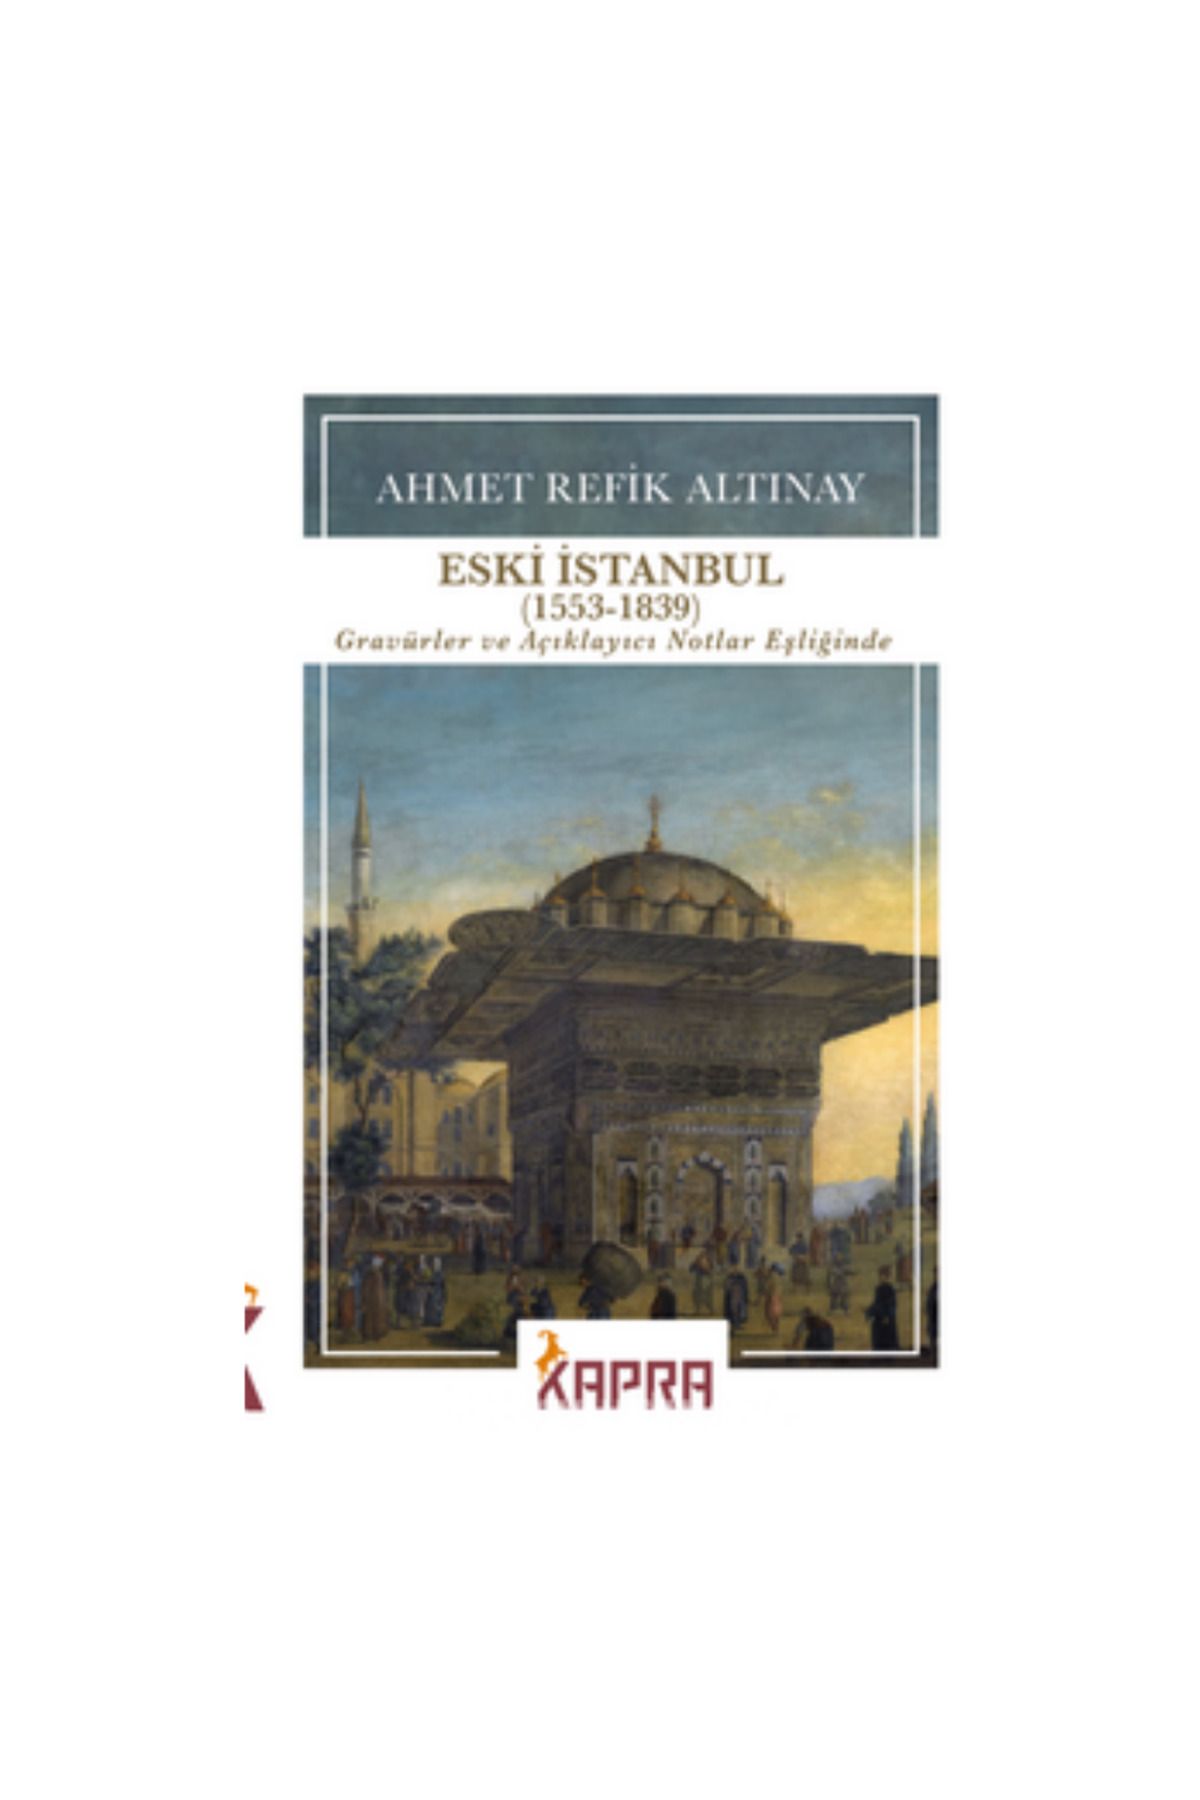 KAPRA YAYINLARI Eski İstanbul (1553-1839) Gravürler ve Açıklayıcı Notlar Eşliğinde